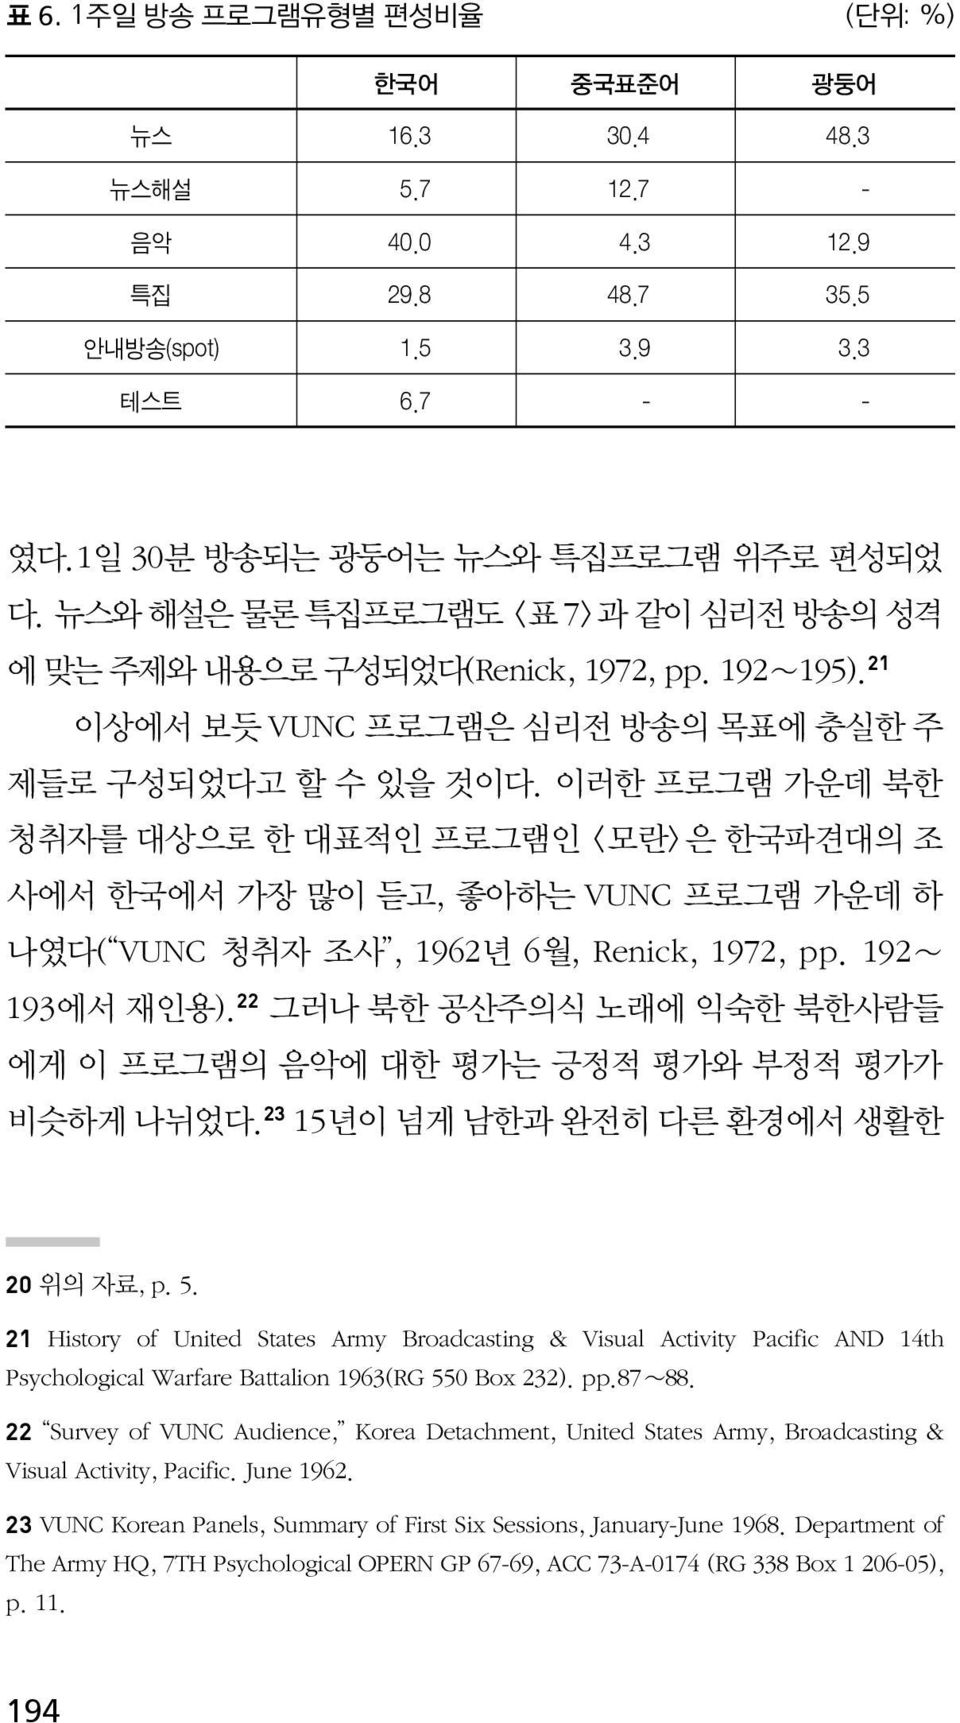 이러한 프로그램 가운데 북한 청취자를 대상으로 한 대표적인 프로그램인 <모란>은 한국파견대의 조 사에서 한국에서 가장 많이 듣고, 좋아하는 VUNC 프로그램 가운데 하 나였다( VUNC 청취자 조사, 1962년 6월, Renick, 1972, pp. 192 193에서 재인용).